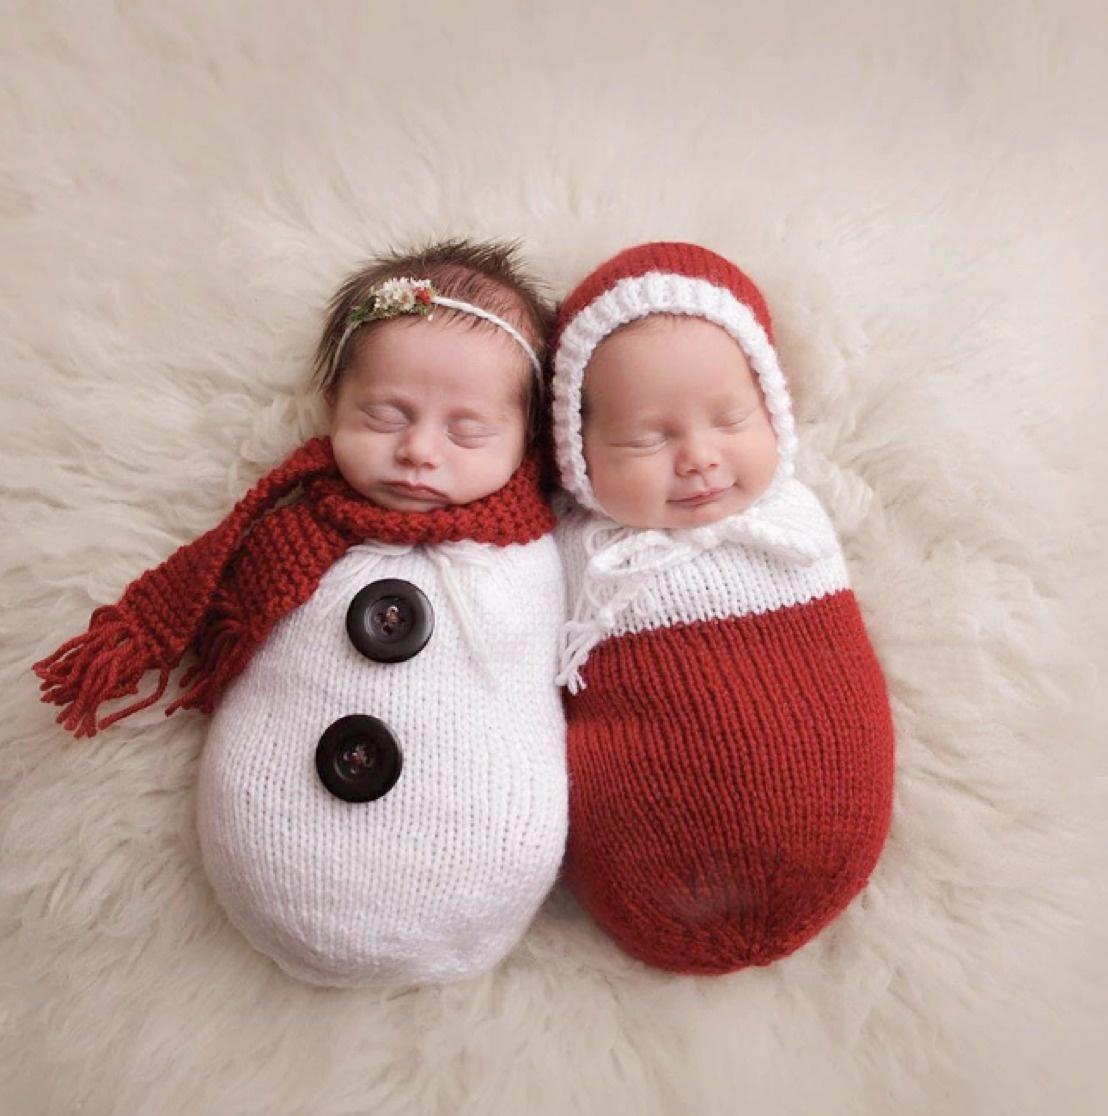 17 Χριστουγεννιάτικες φωτογραφίες νεογέννητων μωρών που θα σας ξετρελάνουν